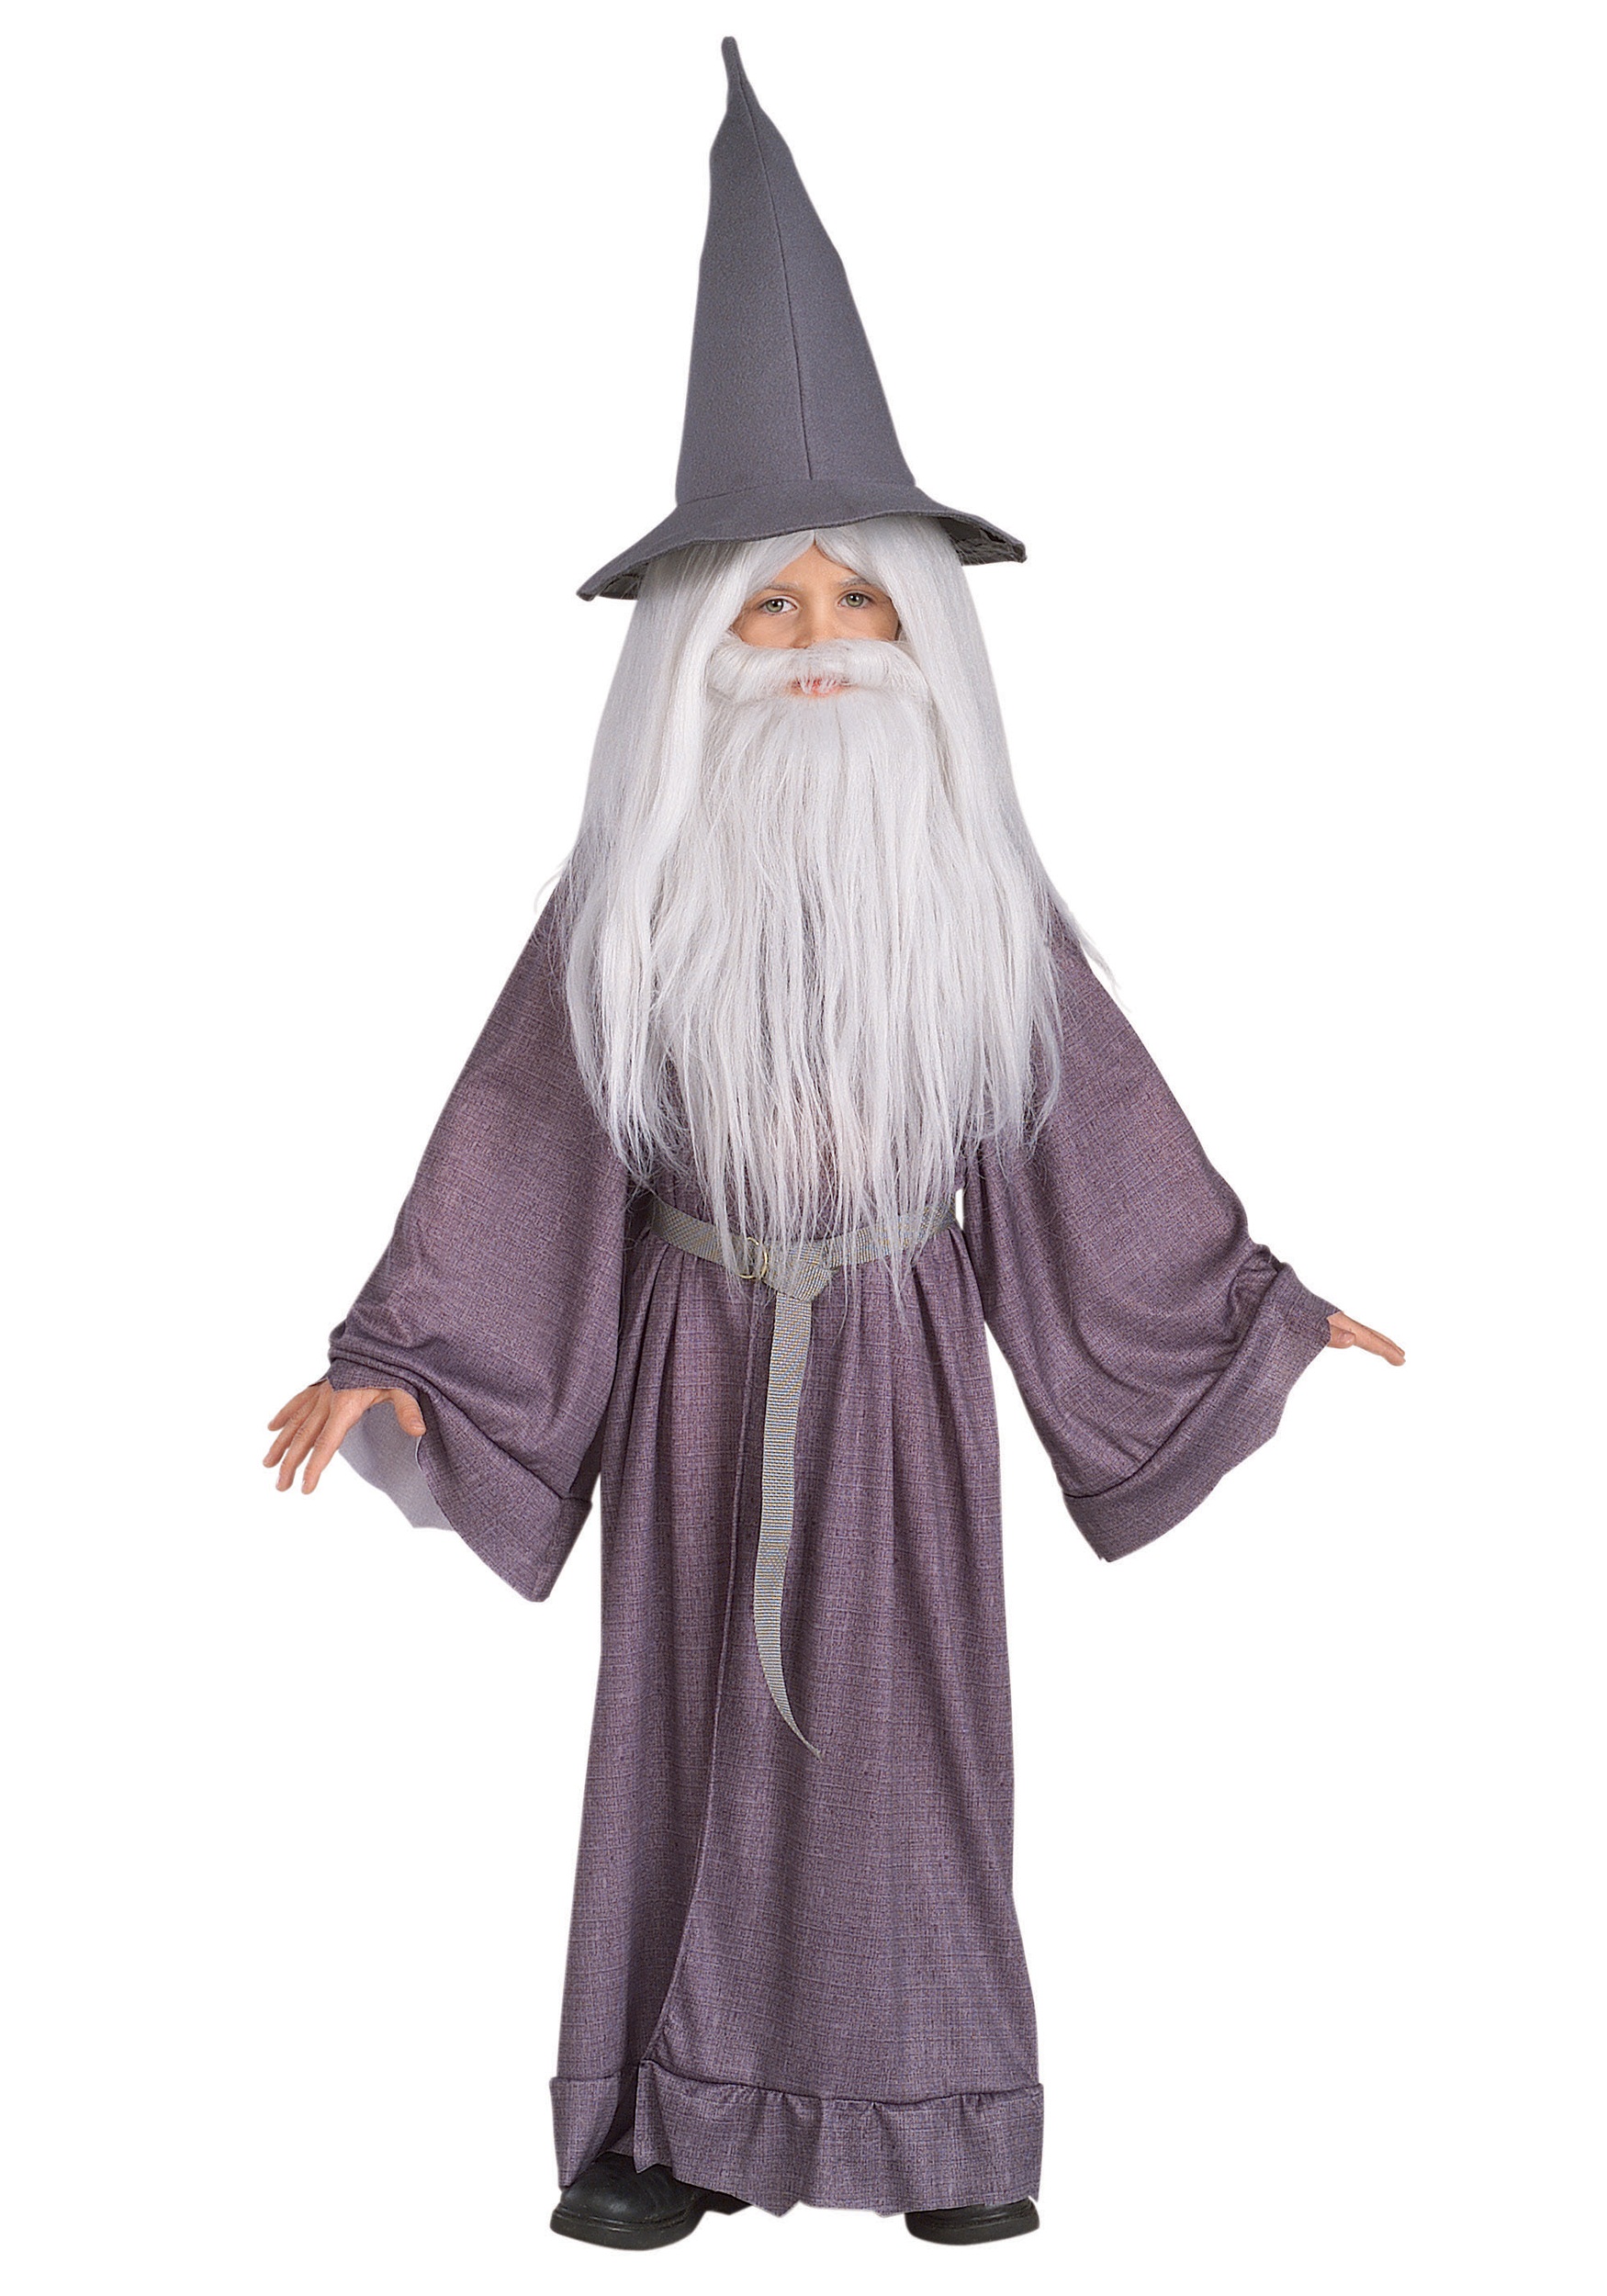 The Hobbit Gandalf Costume for kids